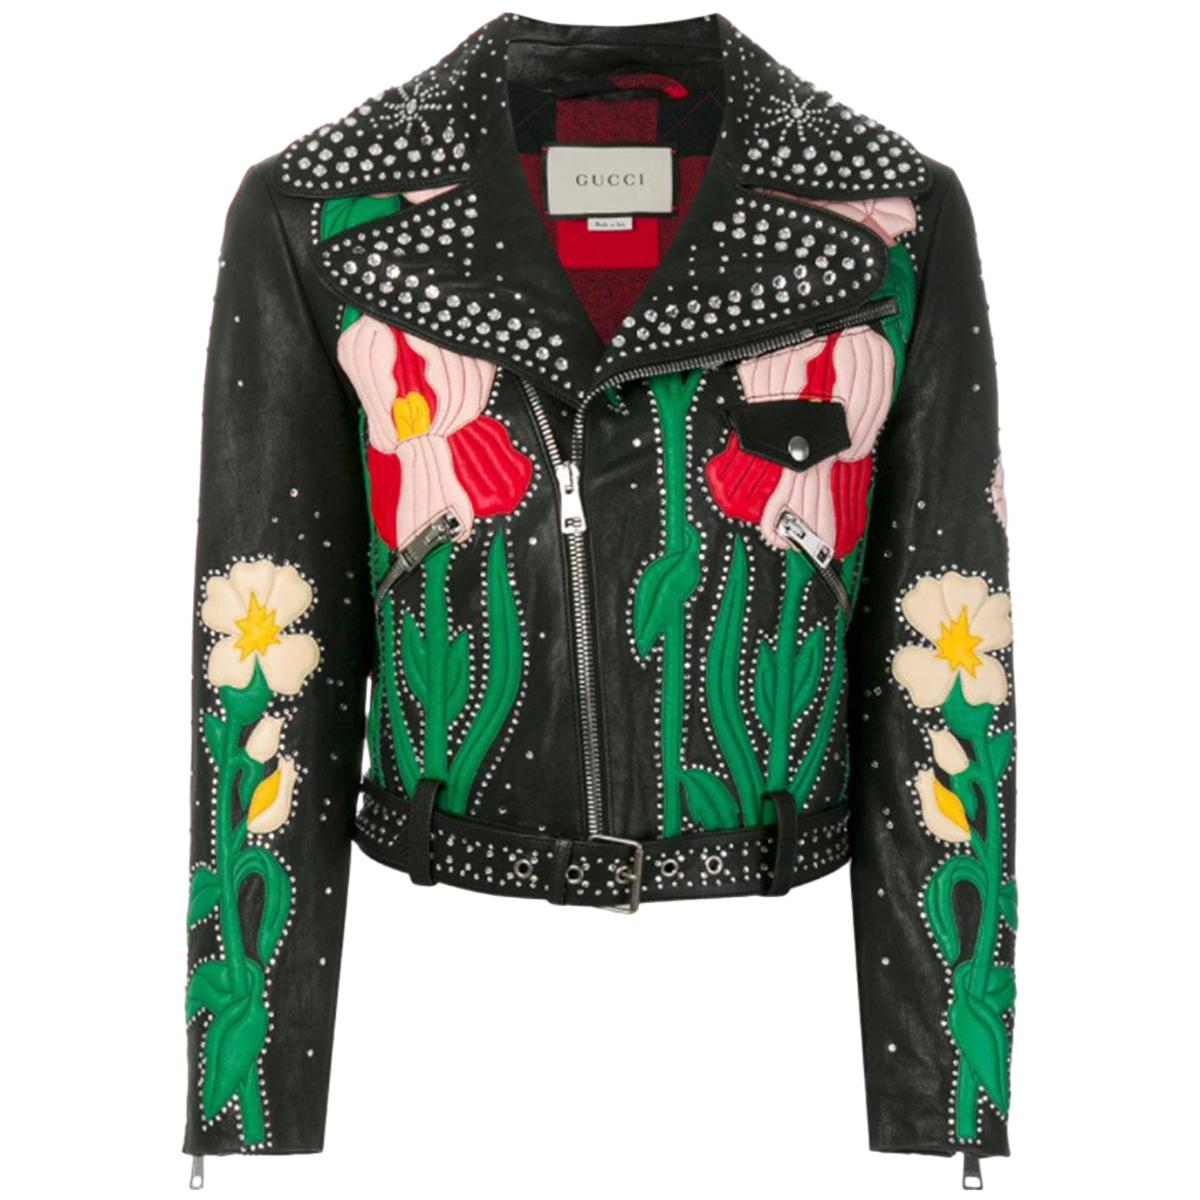 Gucci Embellished Leather Biker Jacket